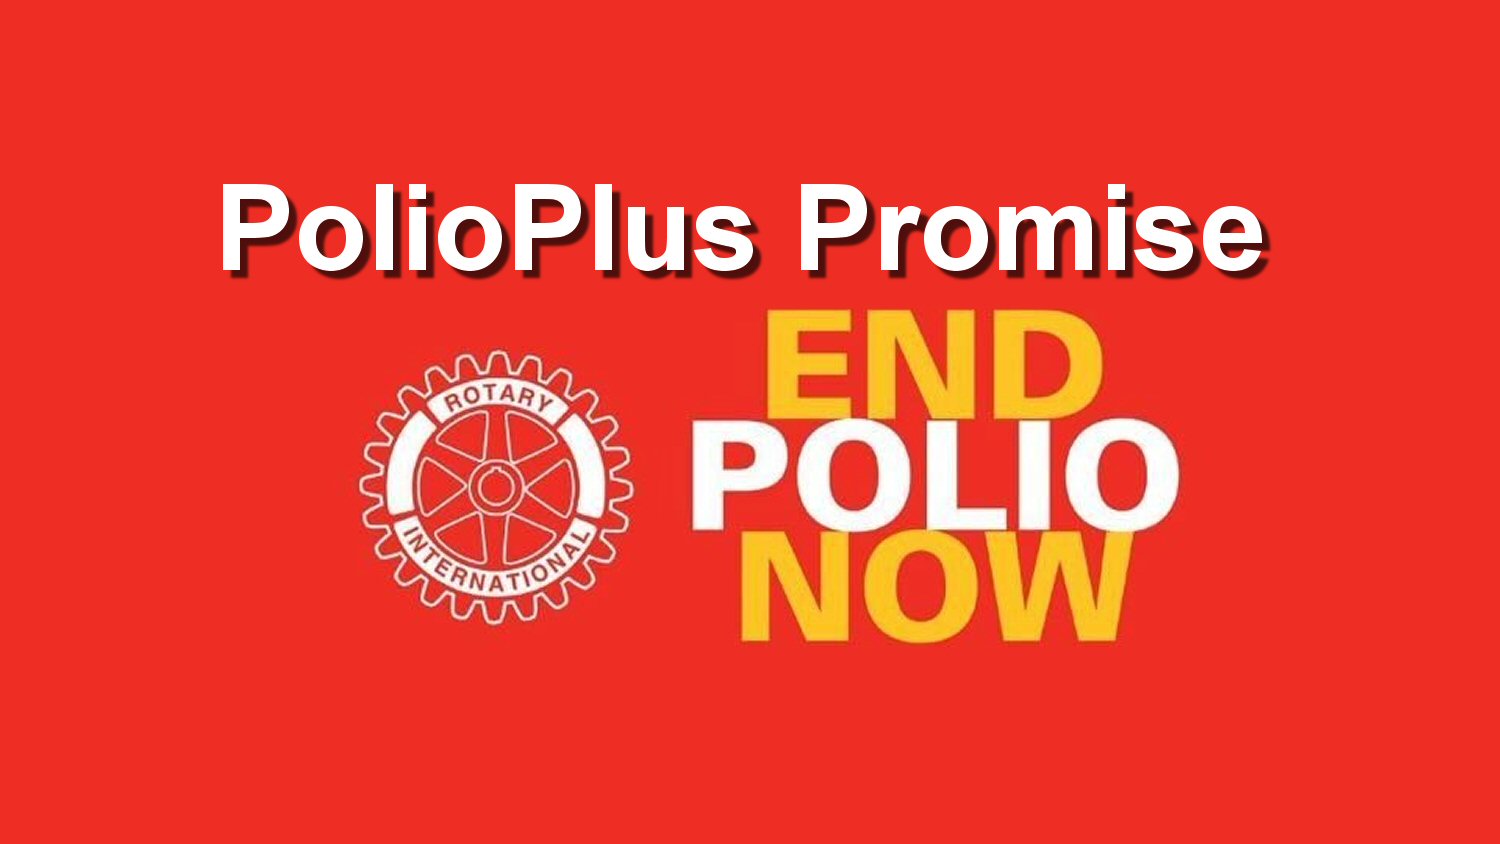 PolioPlus Promise